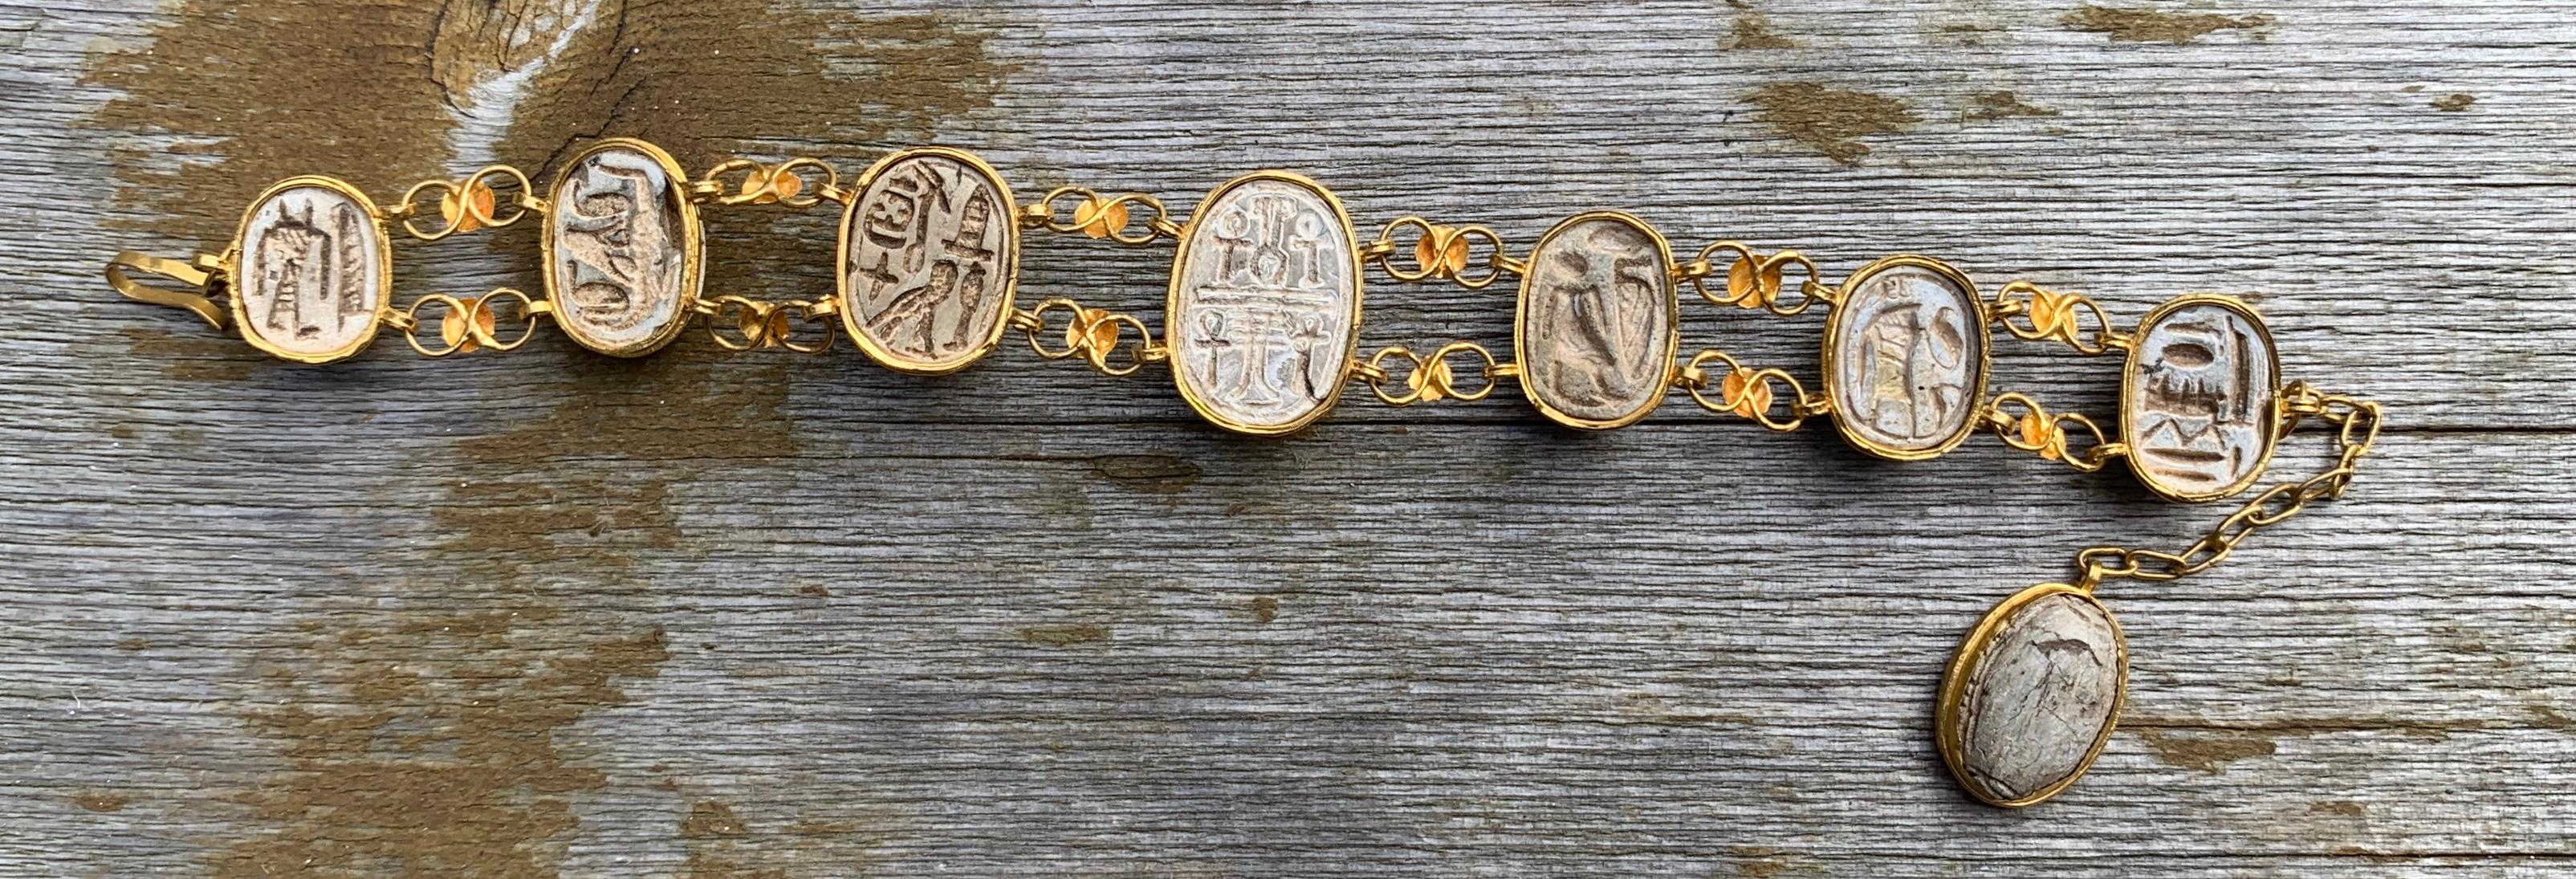 Dies ist eine sehr seltene und wunderbare antike ägyptische Revival Armband mit acht abgestuften Skarabäus-Käfer in 20 Karat Gelbgold mit Hieroglyphen auf der Rückseite der Skarabäen gesetzt. Die prachtvollen Skarabäen sind aus Sandstein